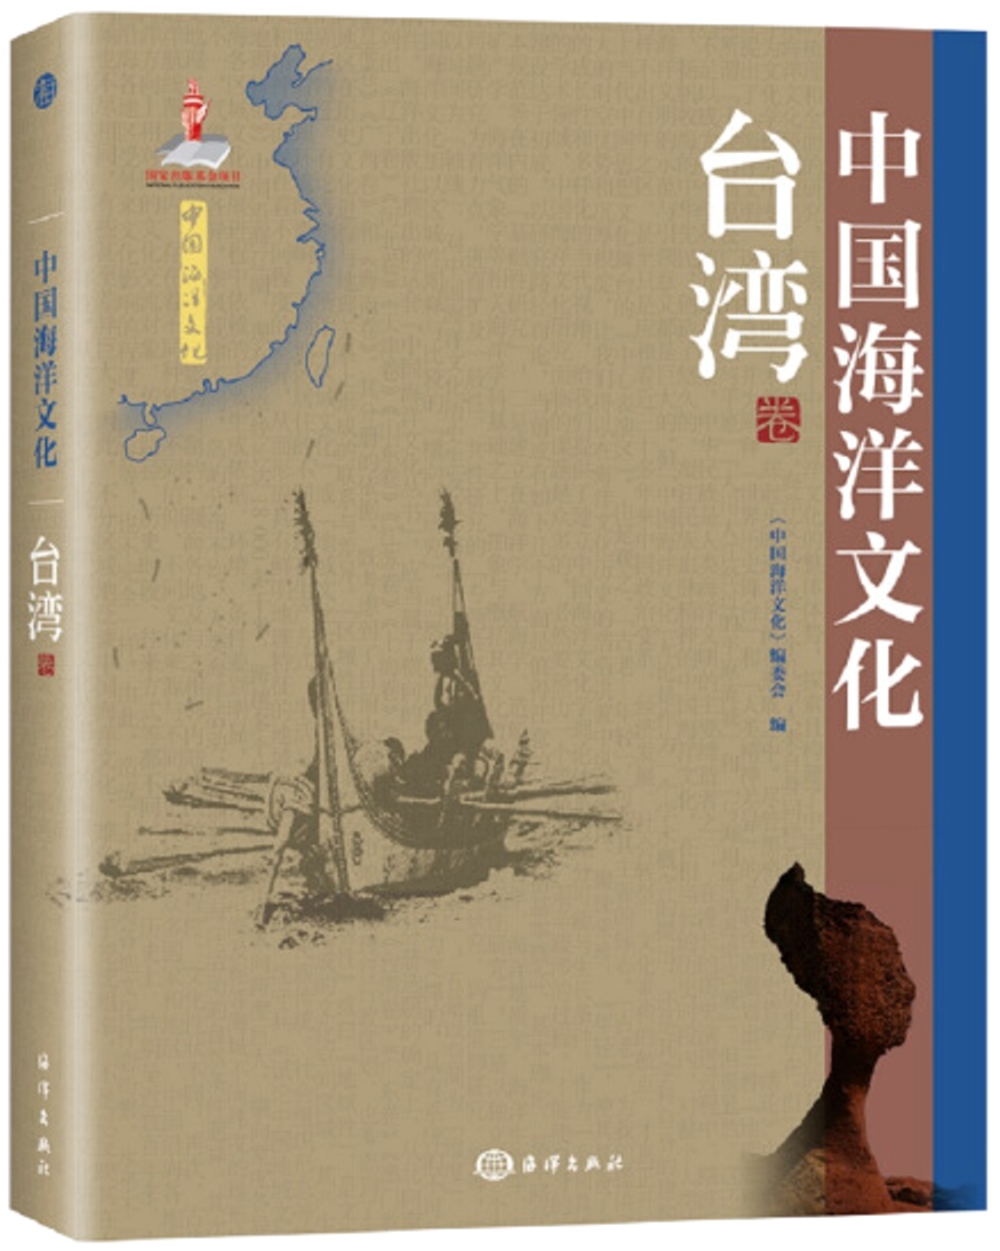 中國海洋文化(台灣卷)